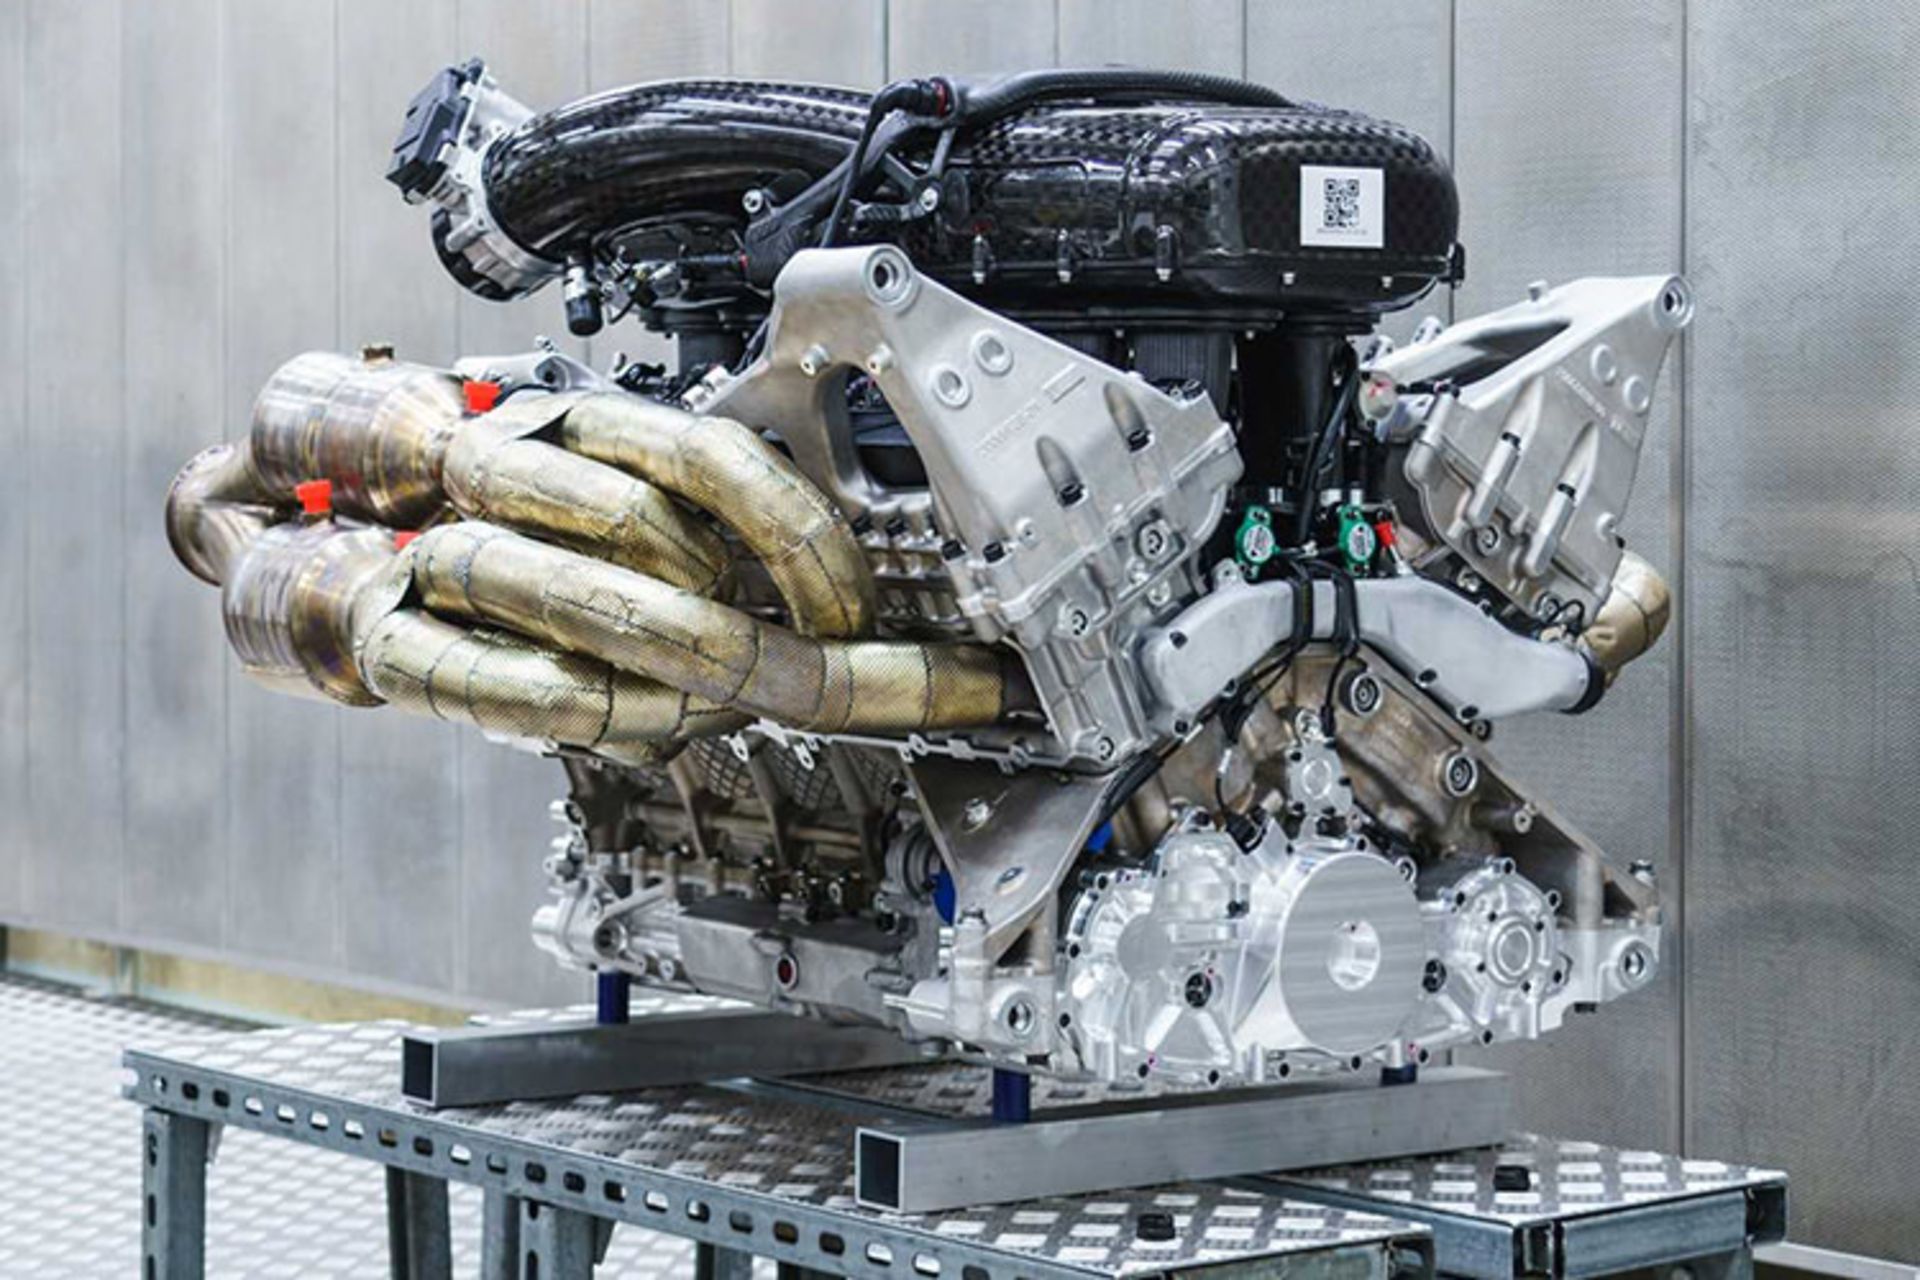 مرجع متخصصين ايران Aston Martin Valkyrie Engine / استون مارتين والكري